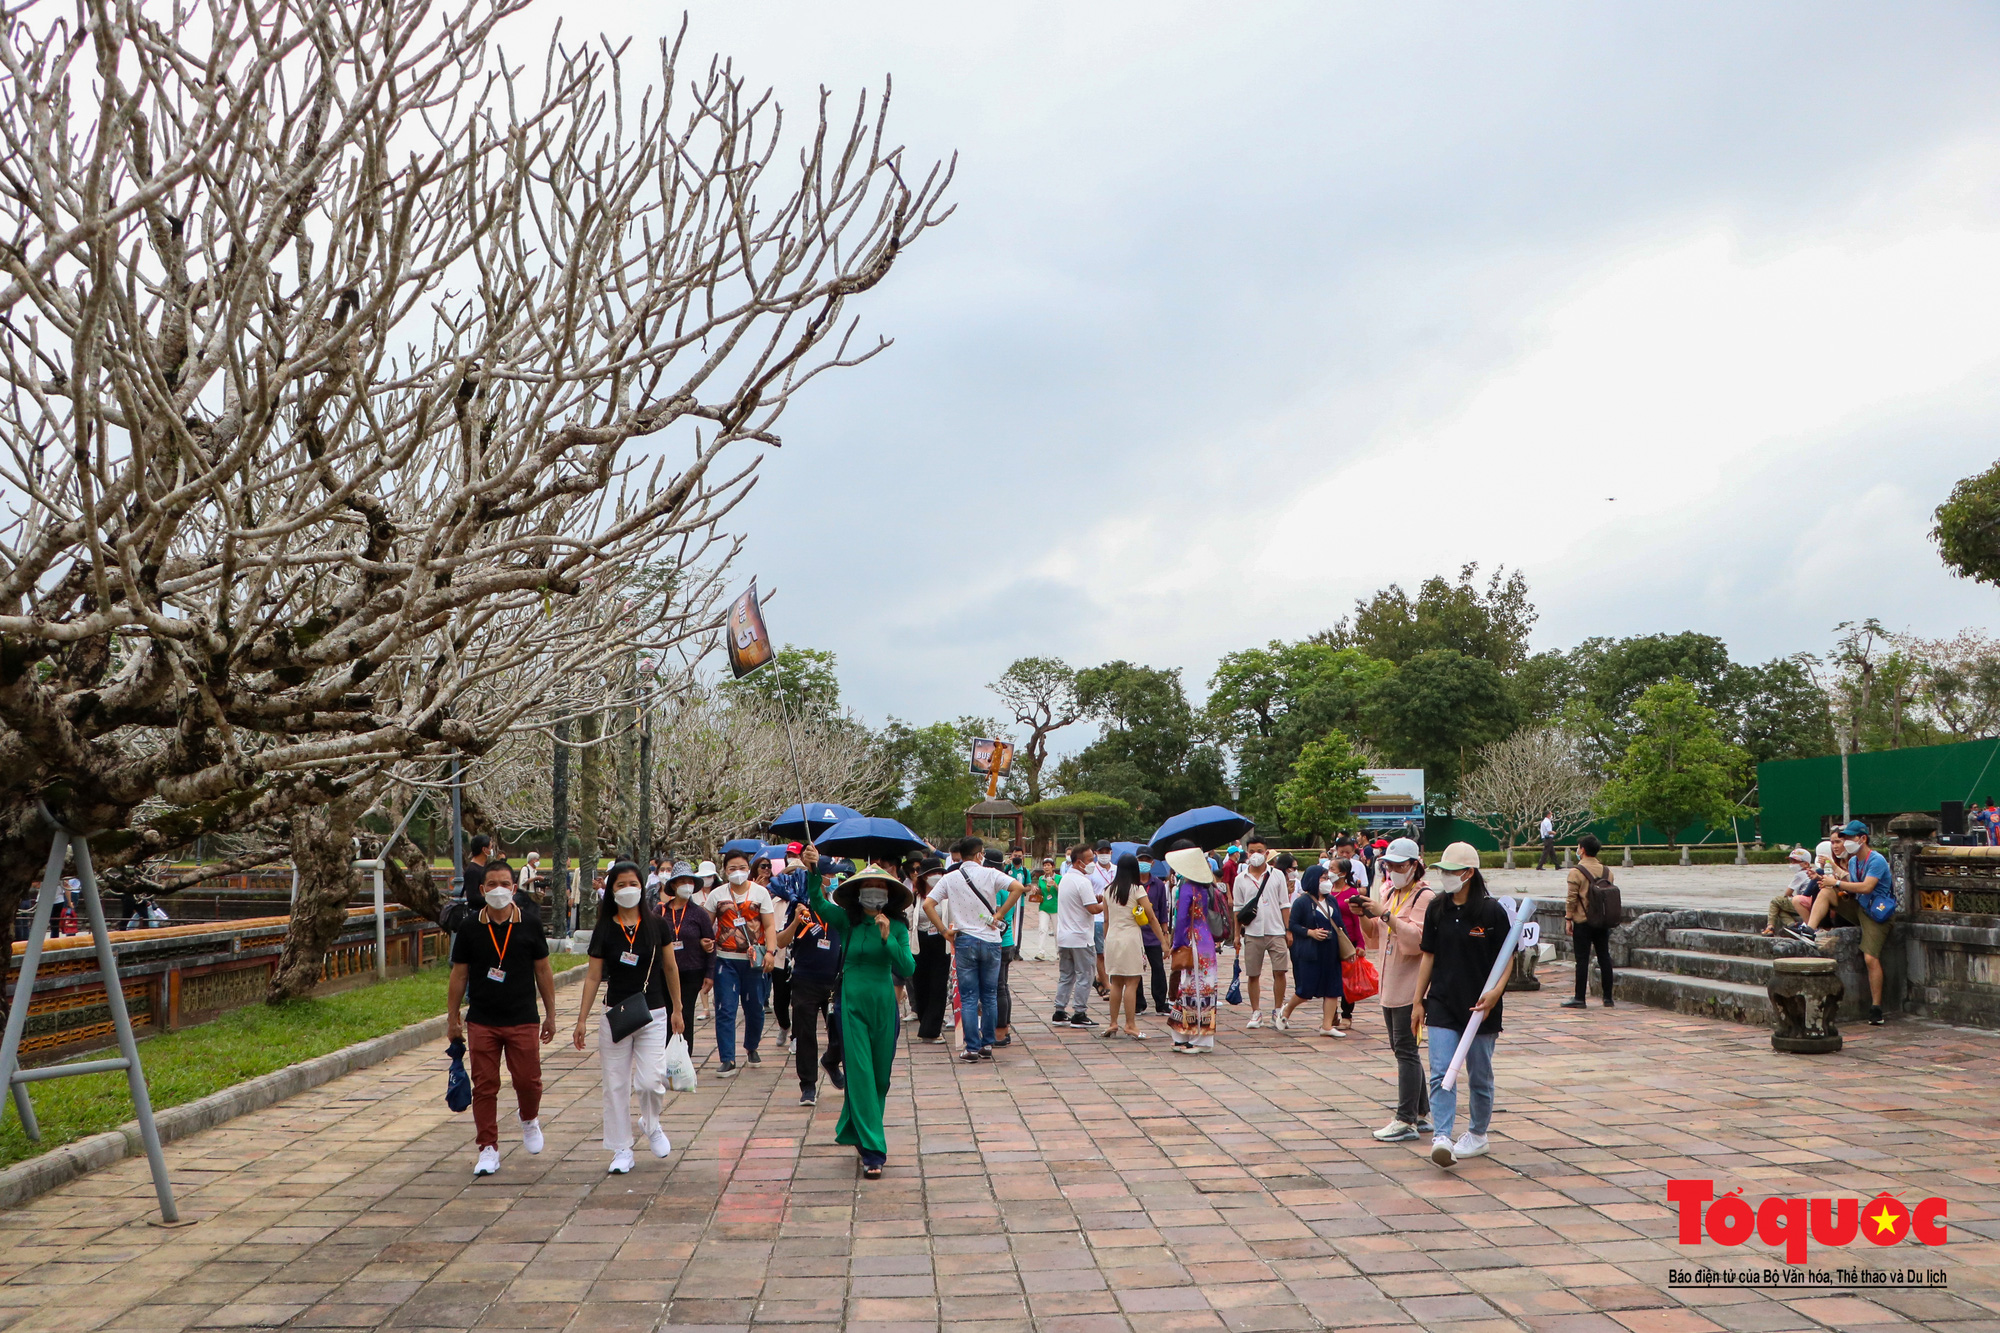 Thừa Thiên Huế đón đoàn khách gần 600 người theo hình thức Team building - Ảnh 2.